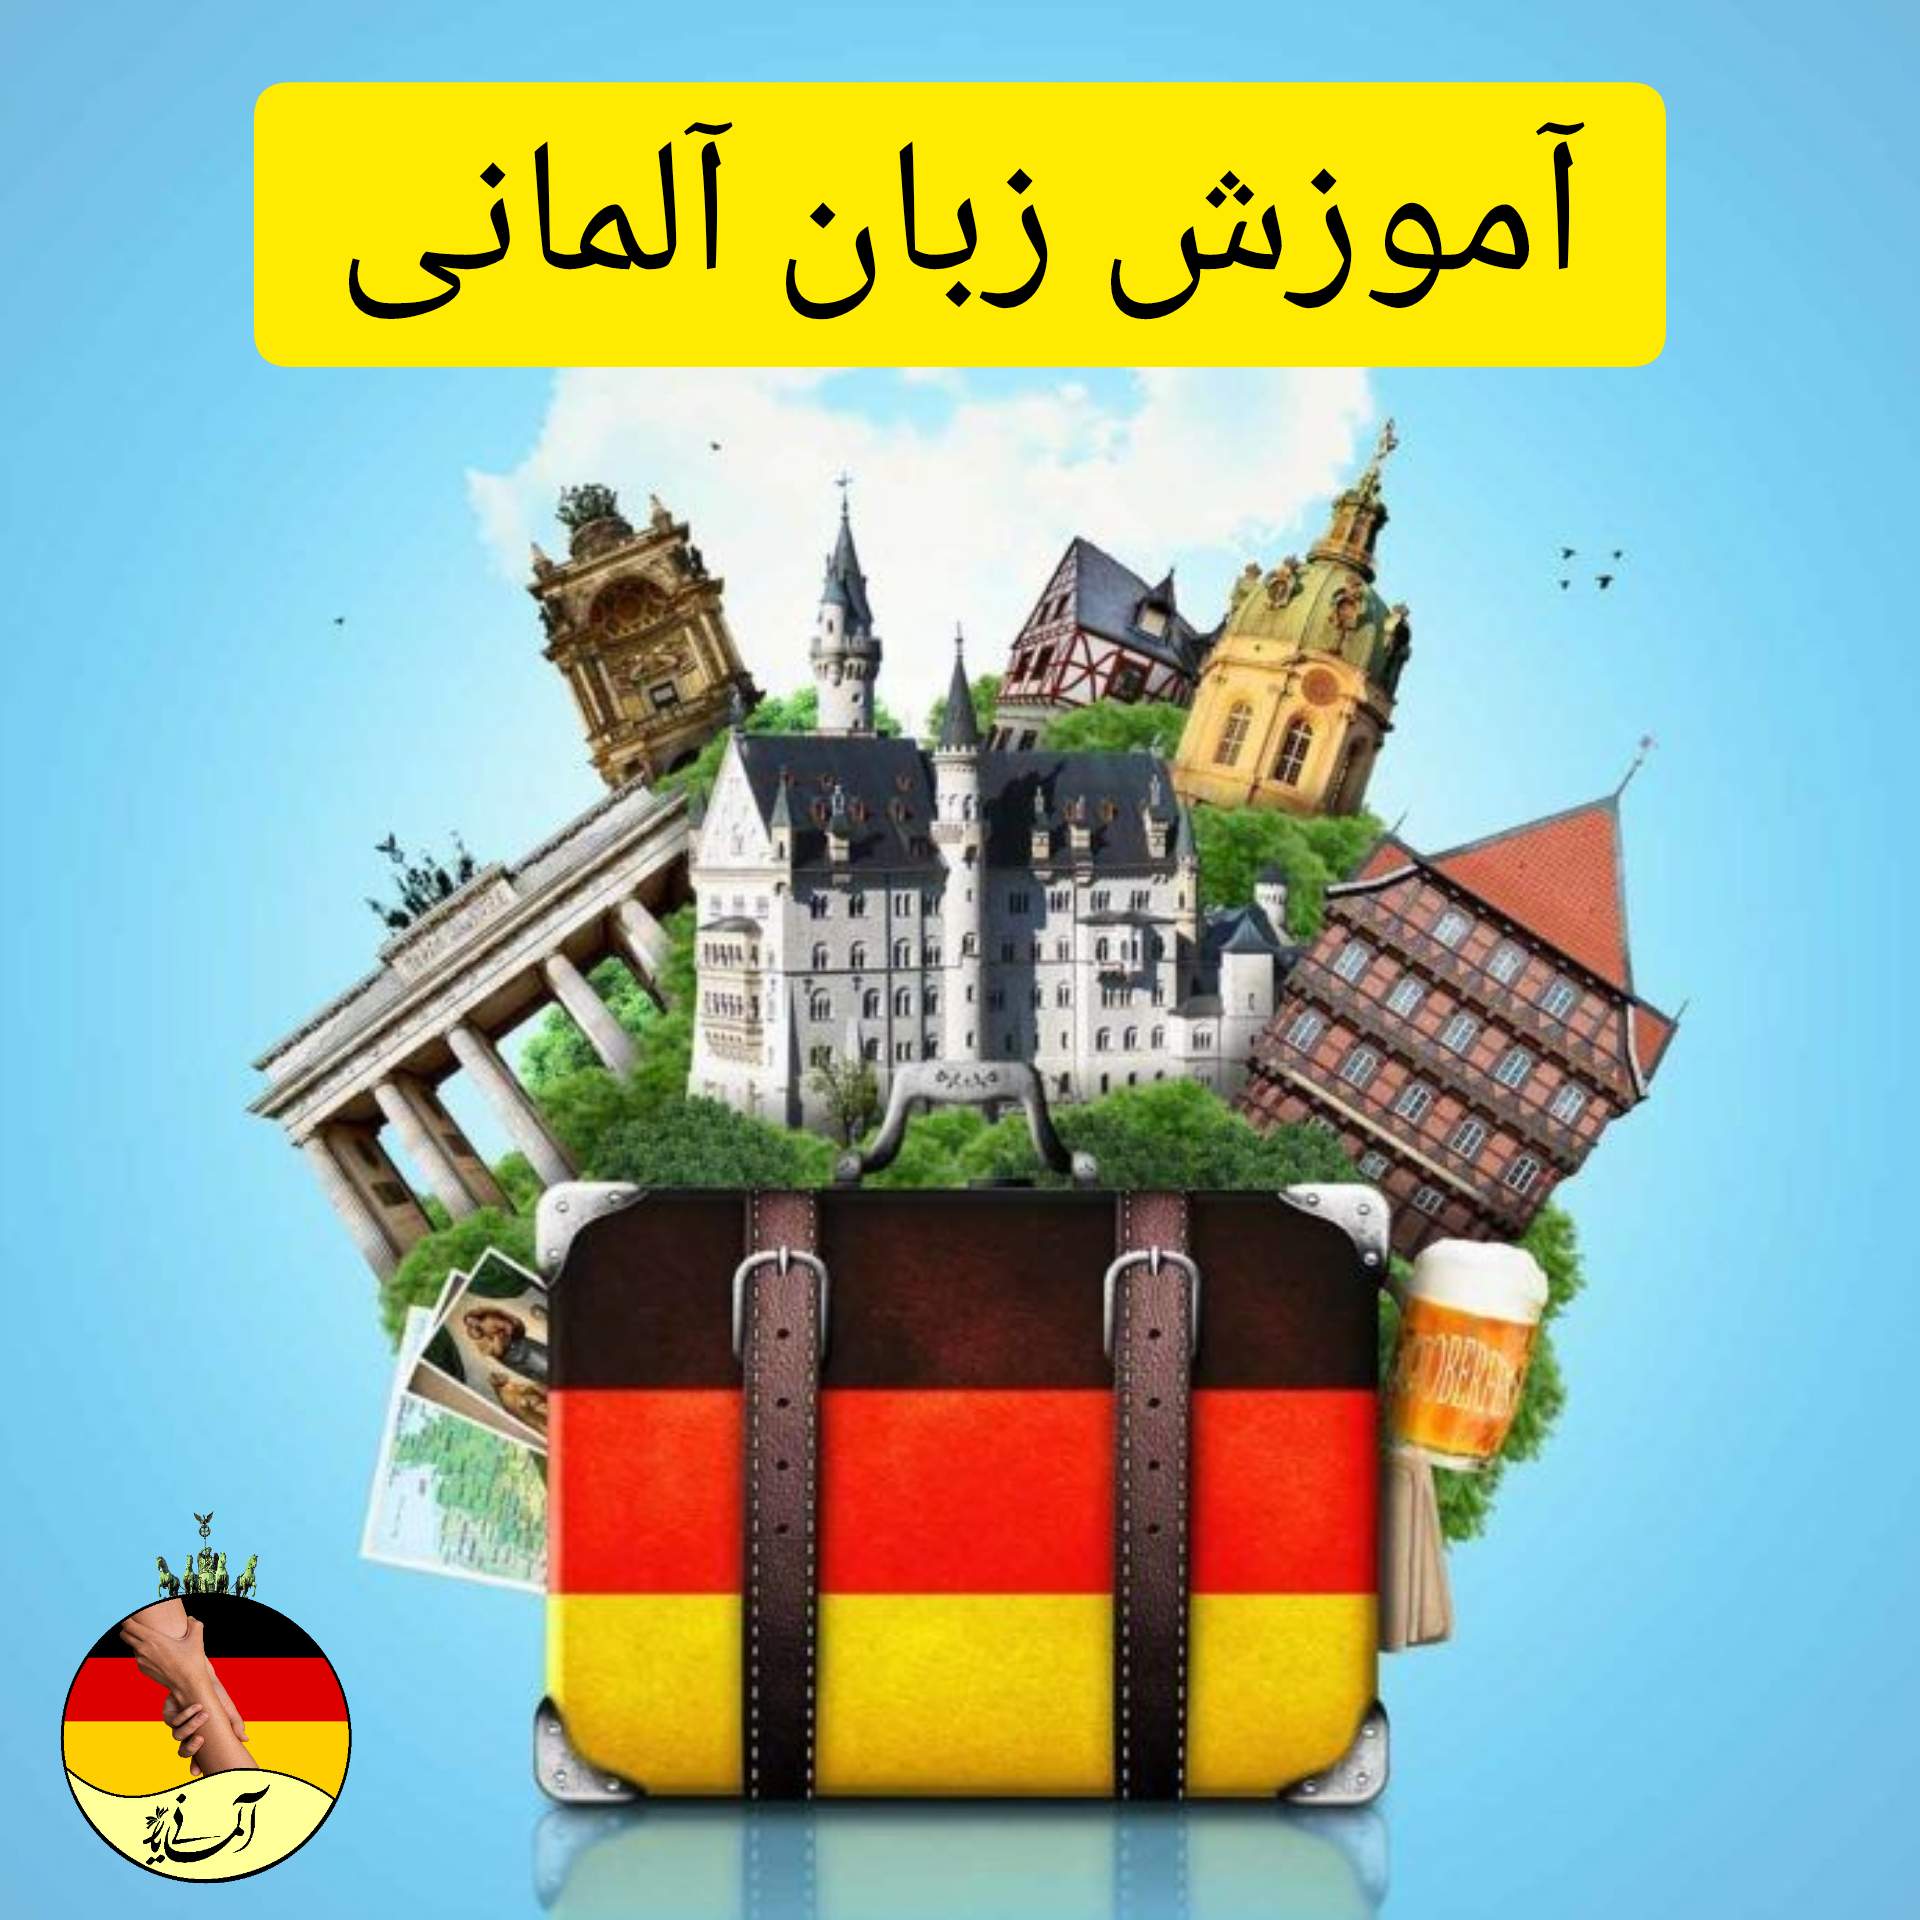 آموزش زبان پرطرفدار  آلمانی